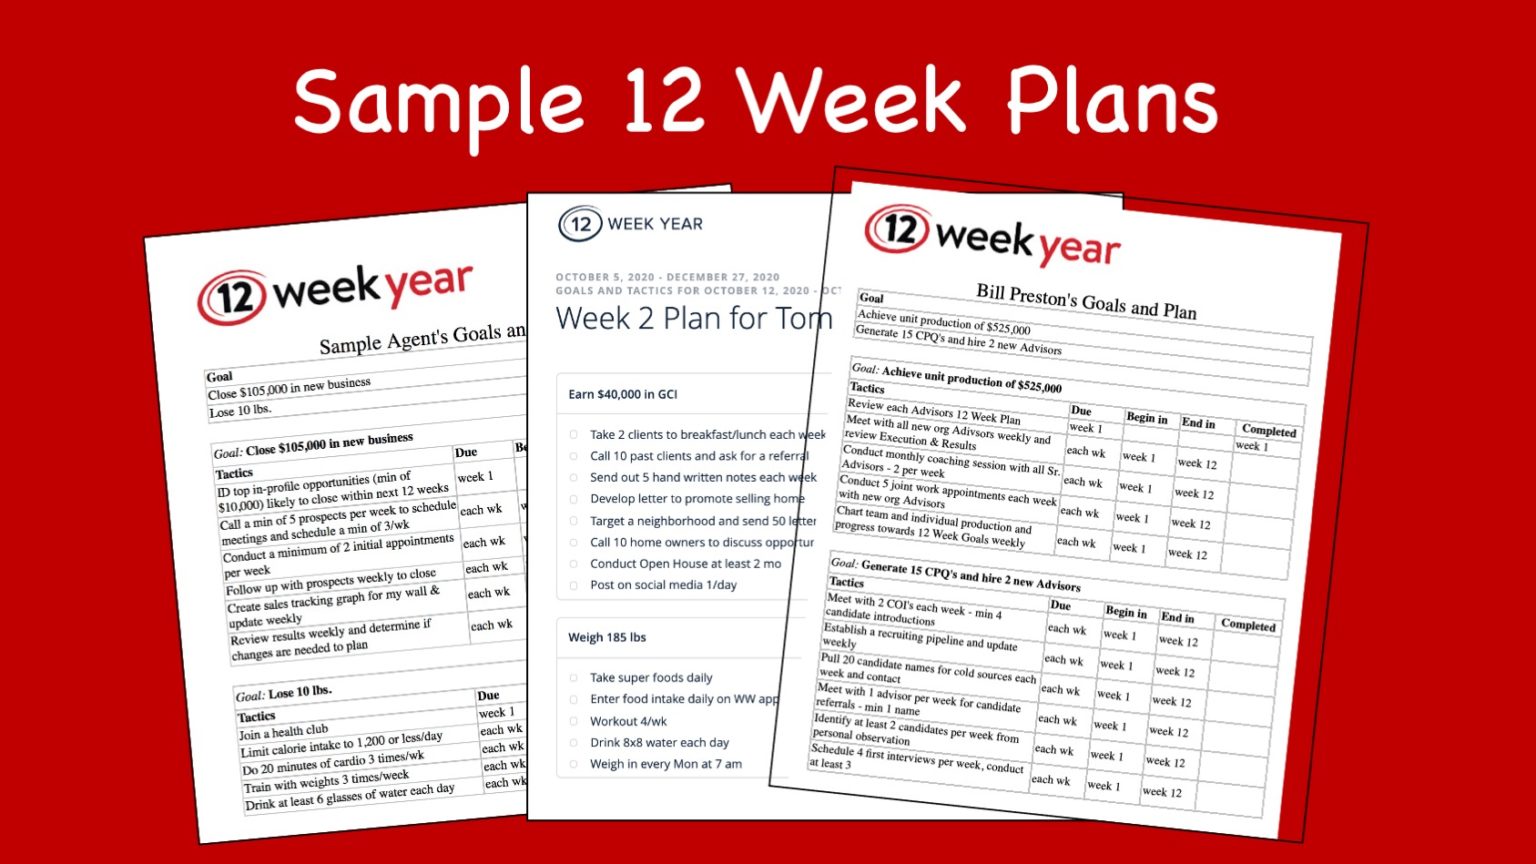 sample-12-week-plans-the-12-week-year